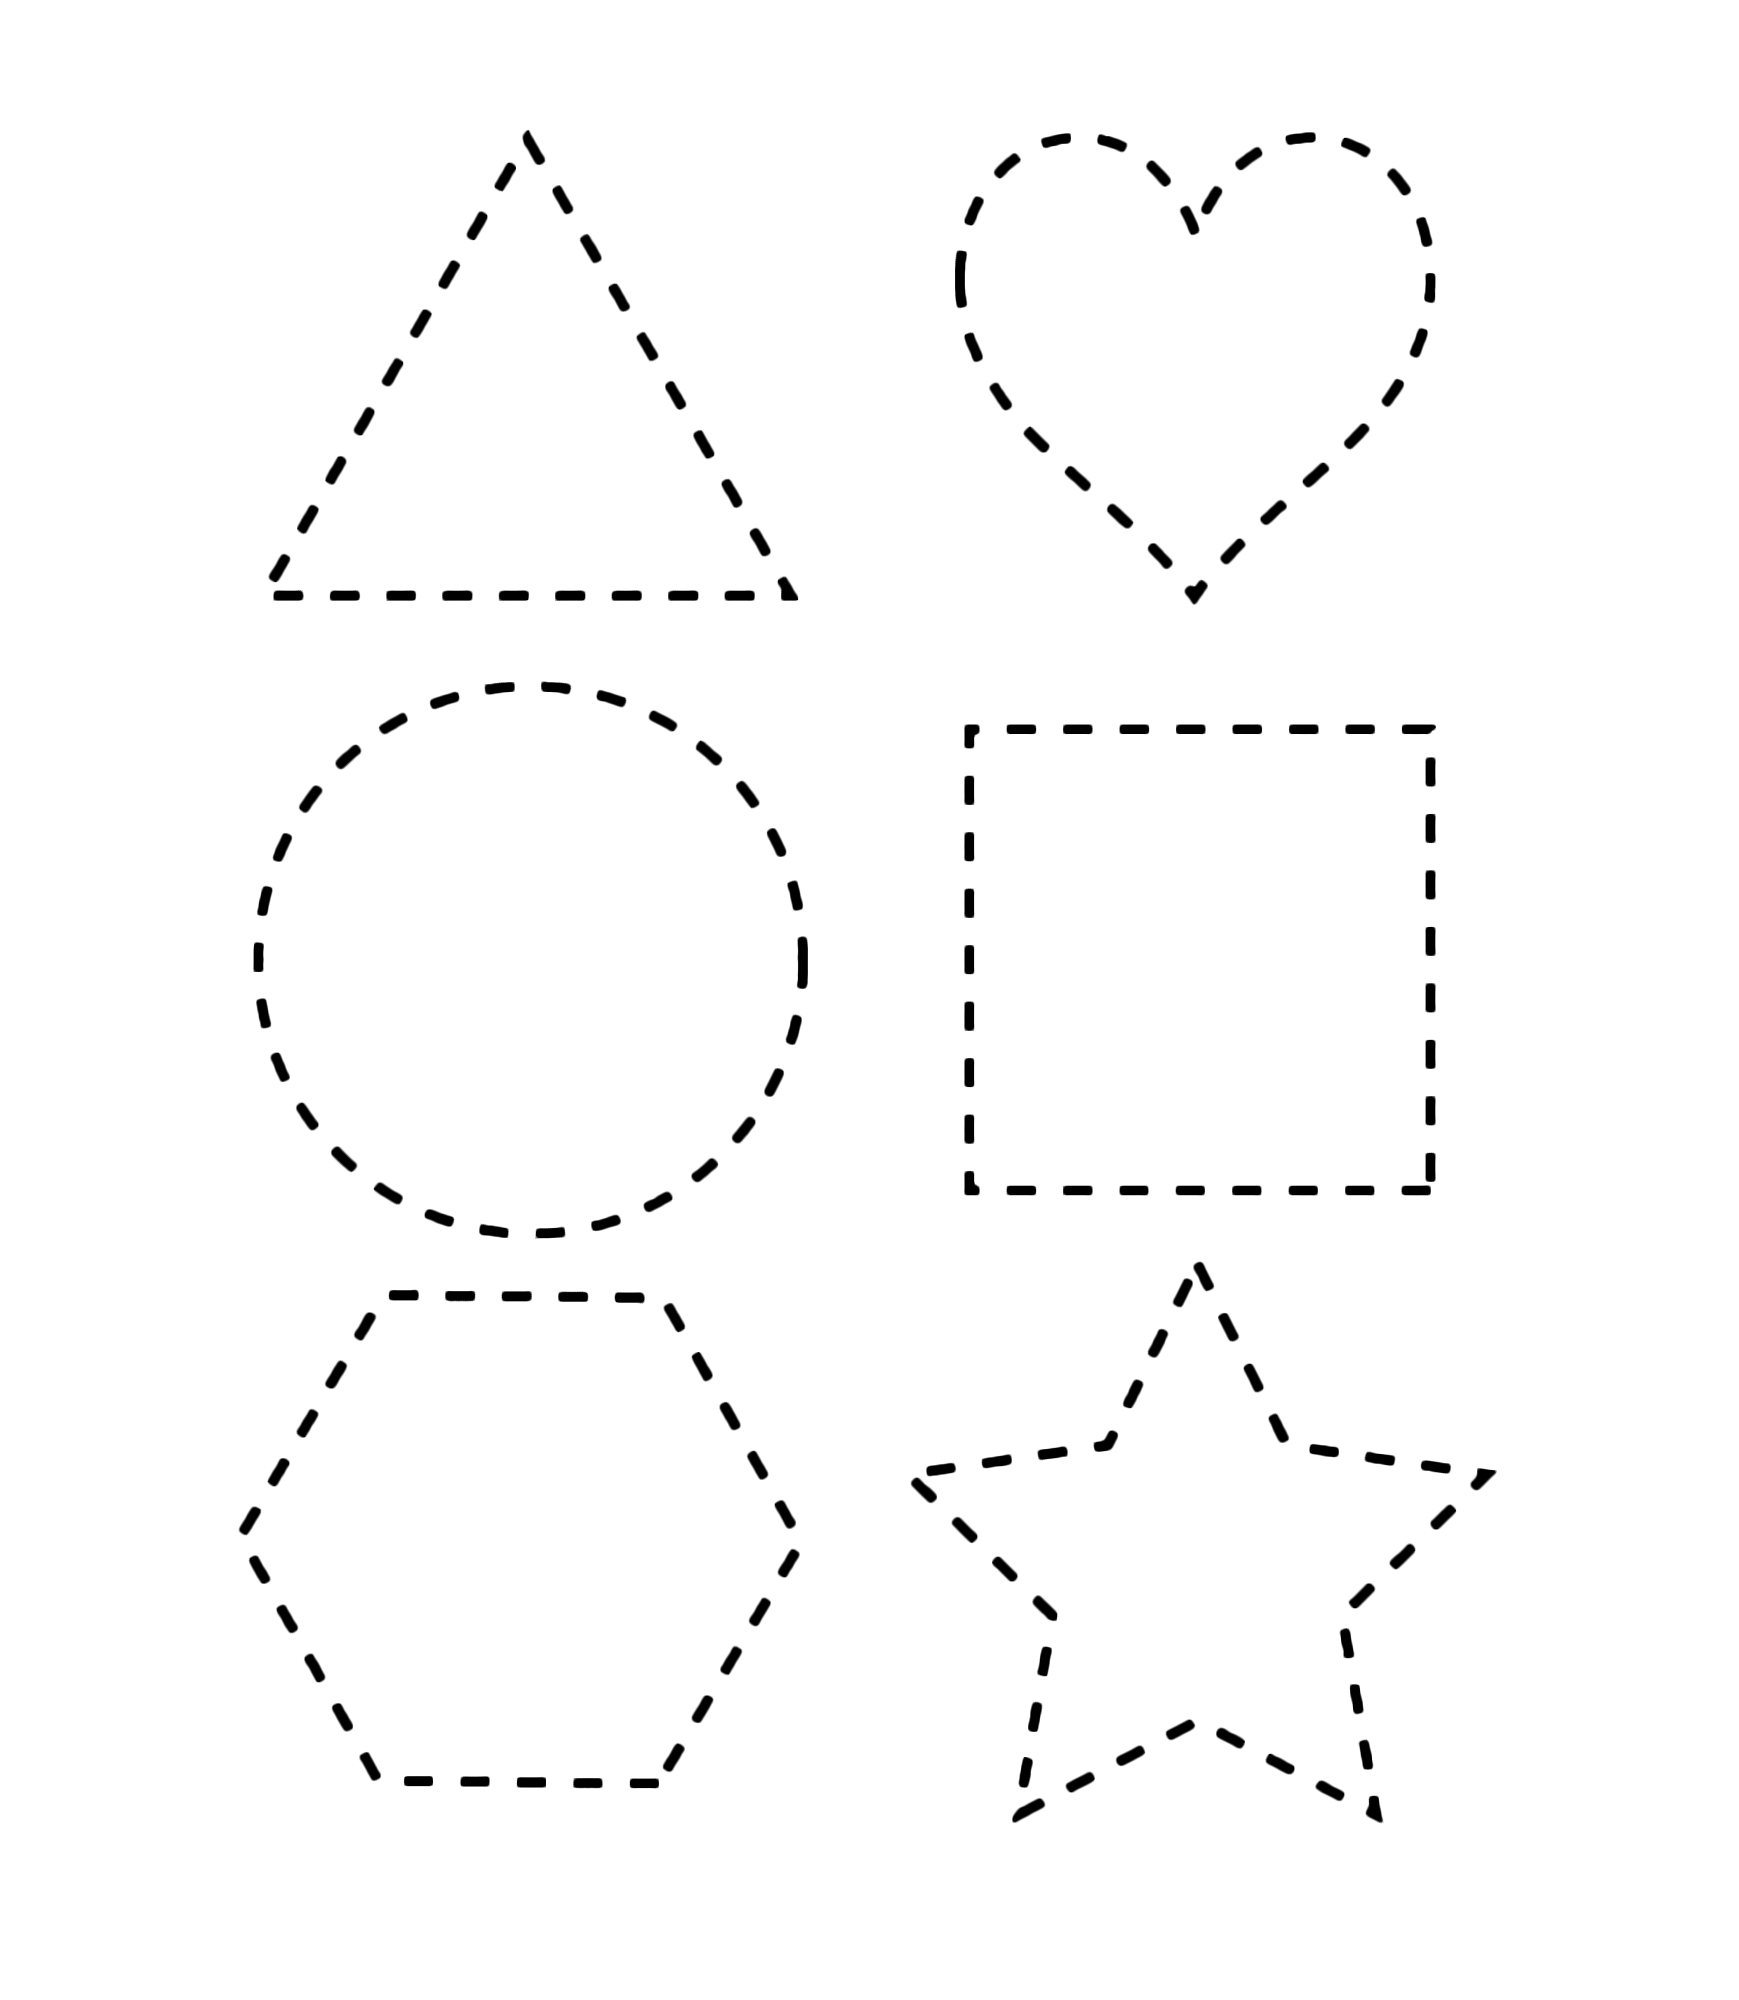 Figure geometriche - Figure geometriche tratteggiate per bambini